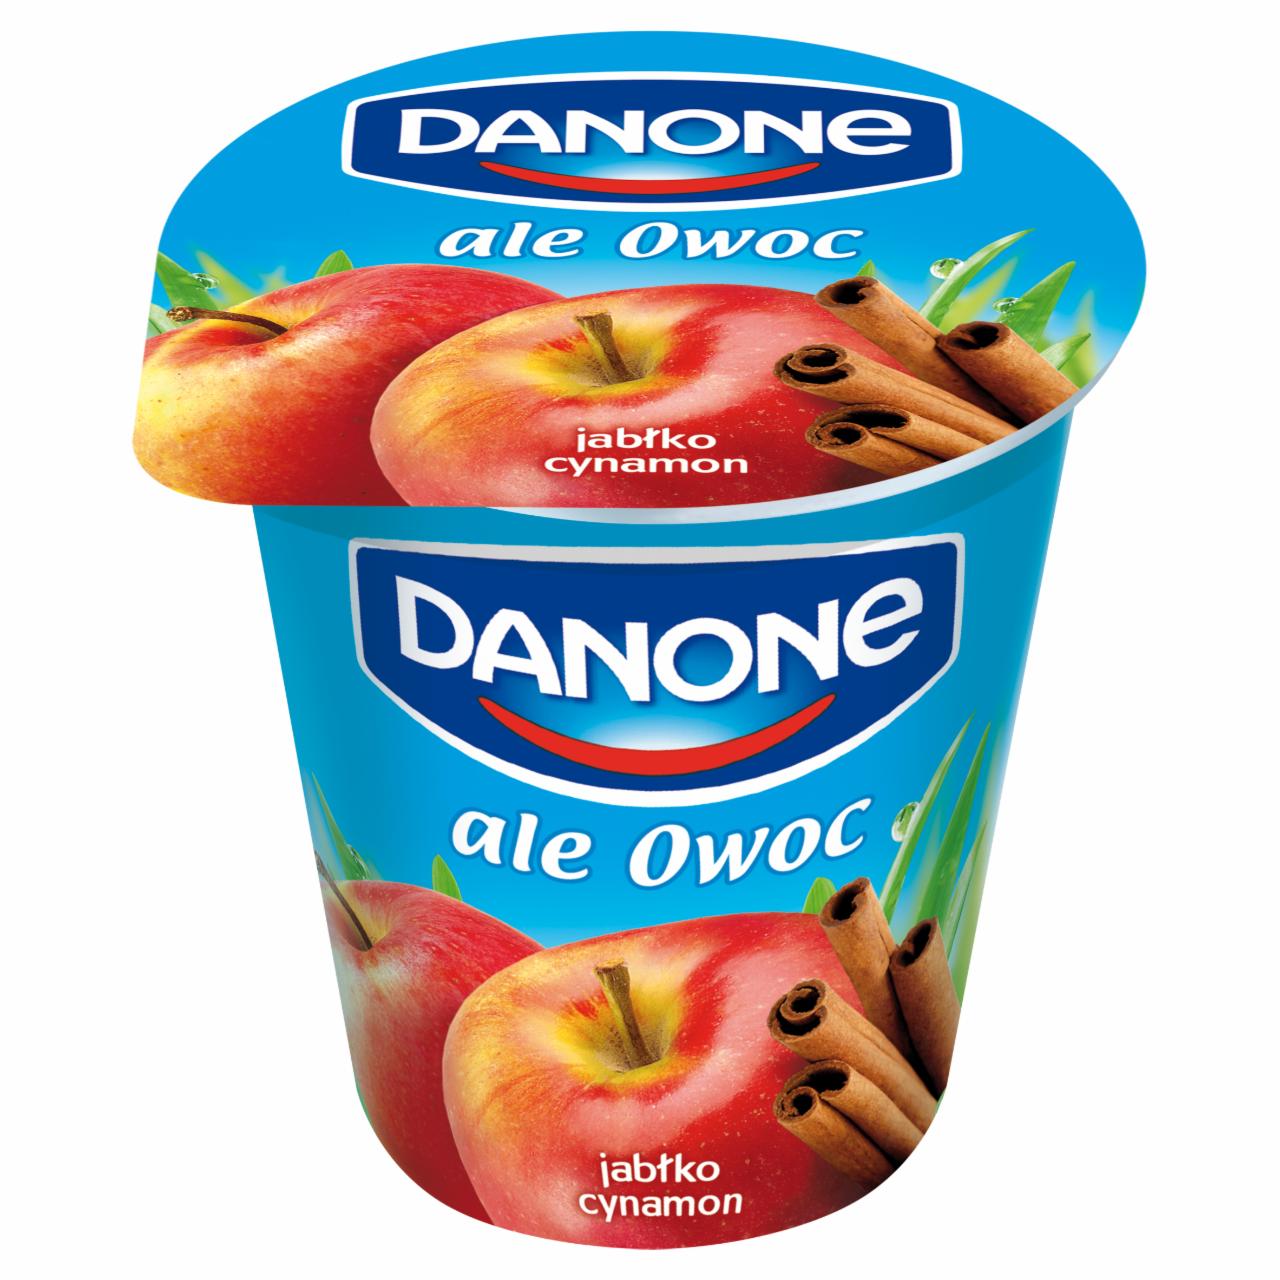 Zdjęcia - Danone ale Owoc Jogurt jabłkowo-cynamonowy 150 g